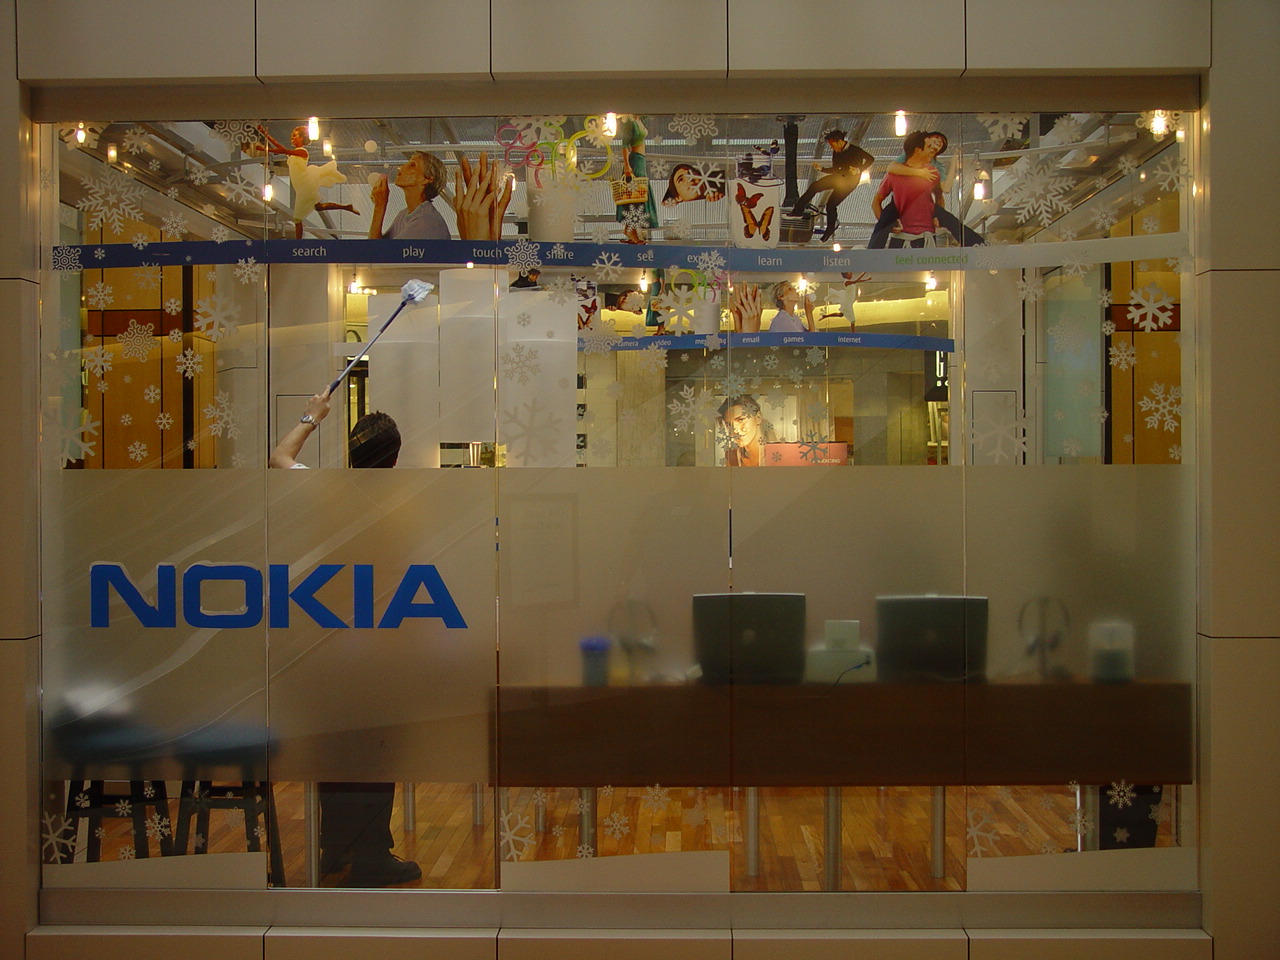 Nokia Kiosk 11-01-05 002.jpg